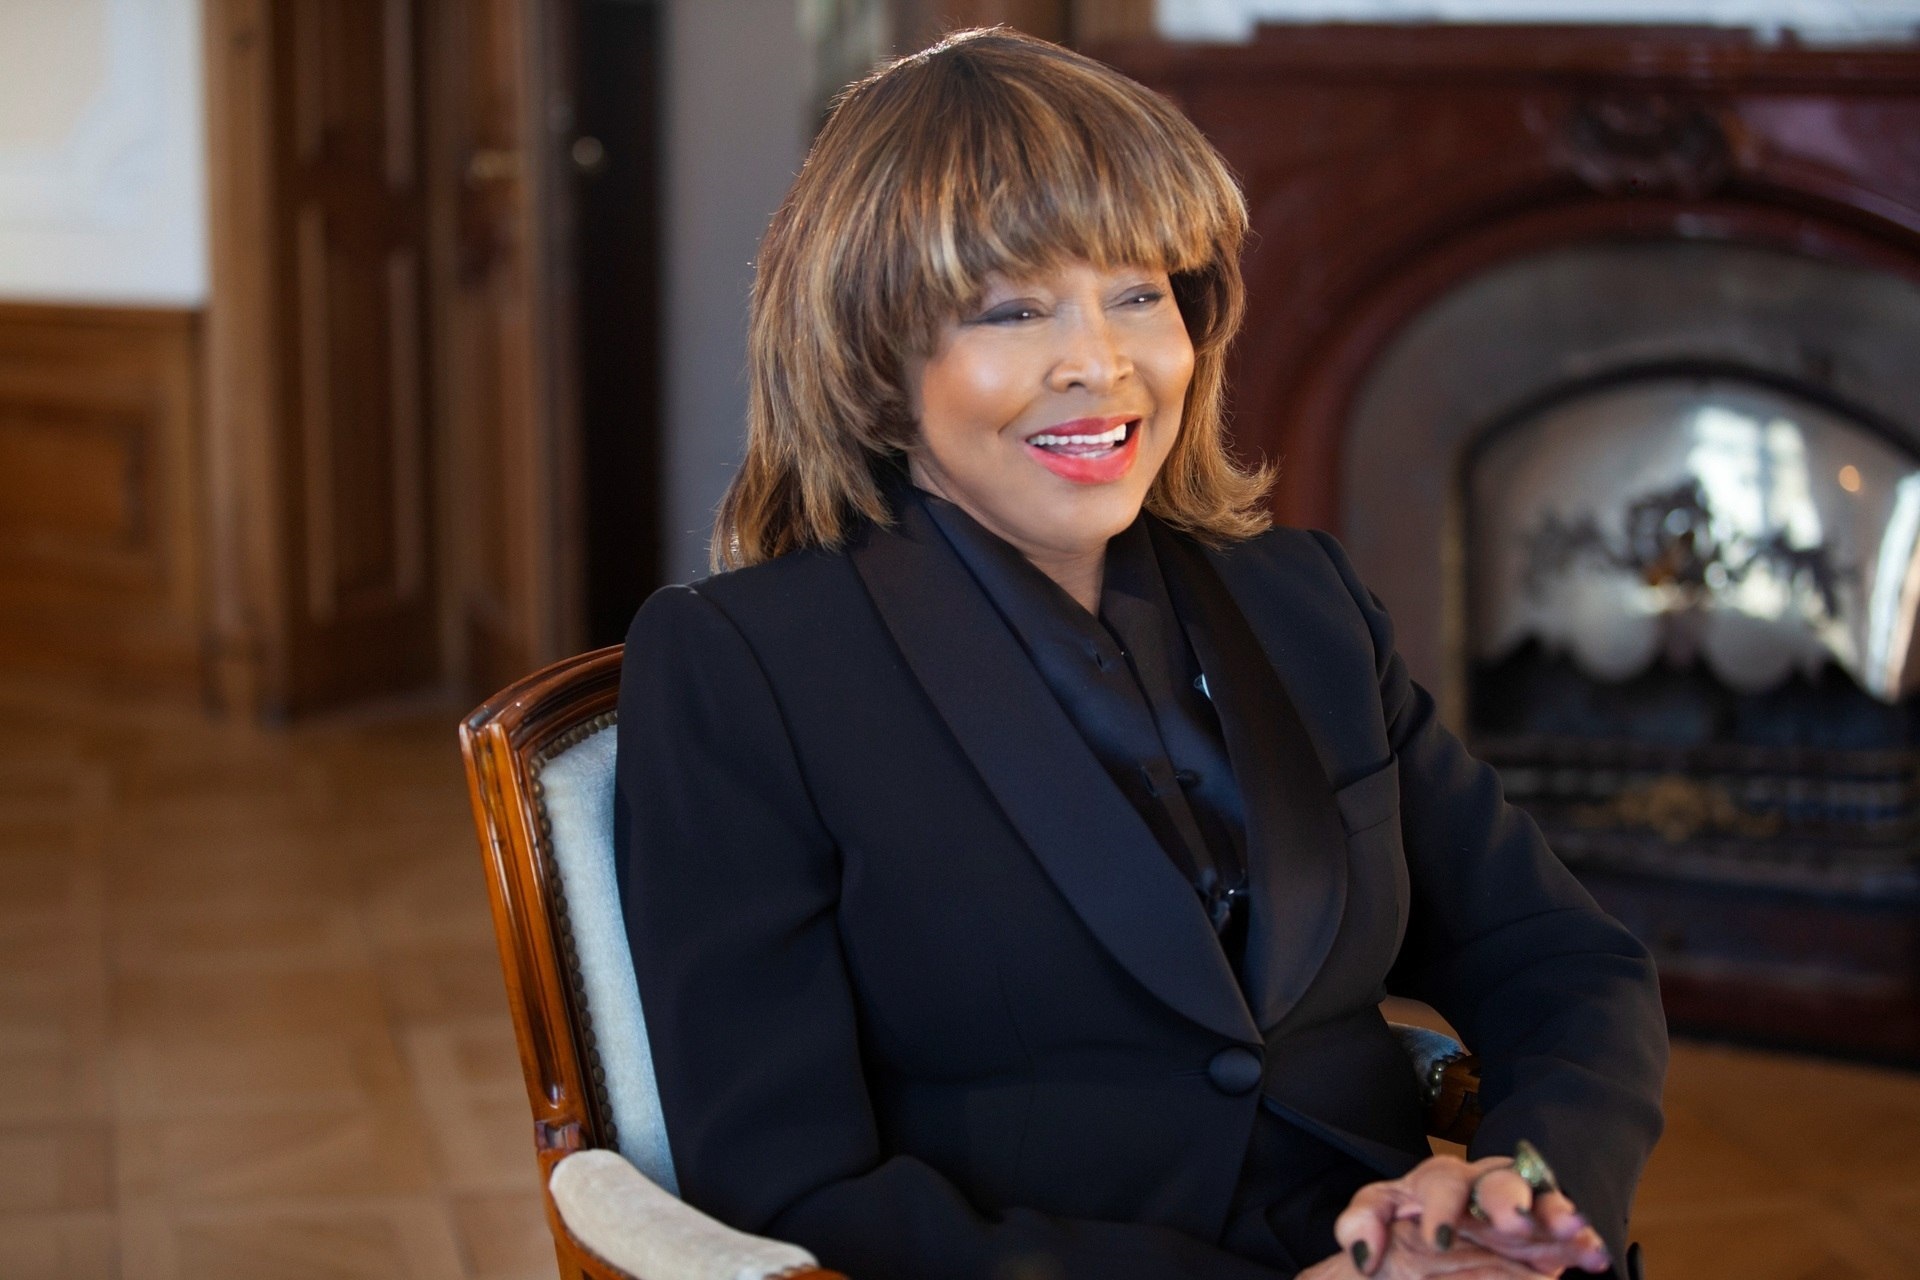  Tina Turner mientras habla durante una escena del documental "Tina" (Foto: EFE/Rhonda Graam/Cortesía HBO)
